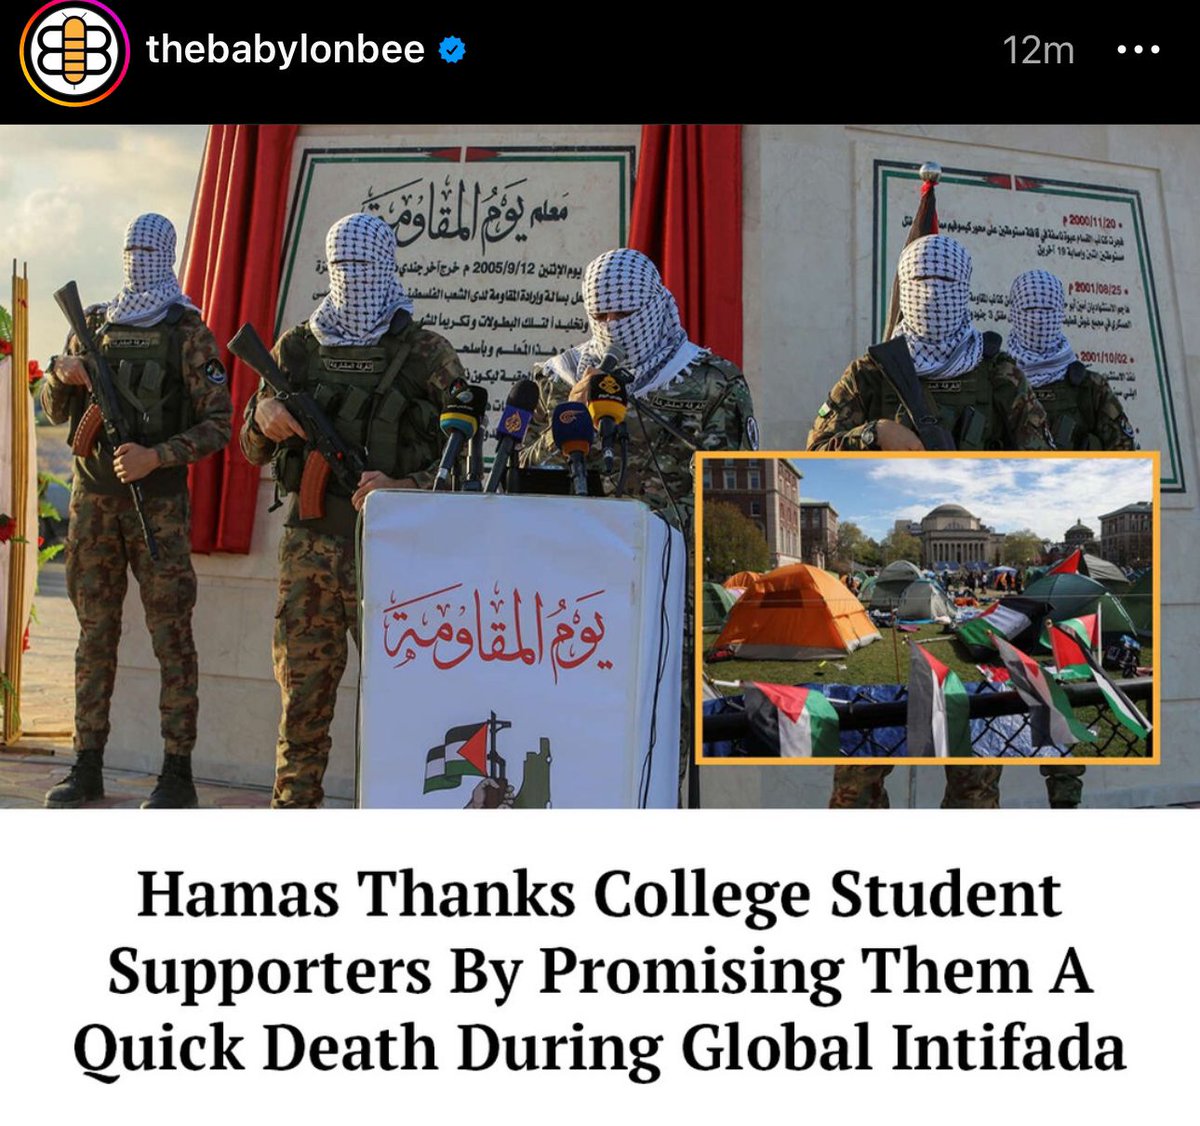 Hamas agradecendo aos protestos dos estudantes lhes prometendo uma morte rapida e indolor durante a proxims entifada...